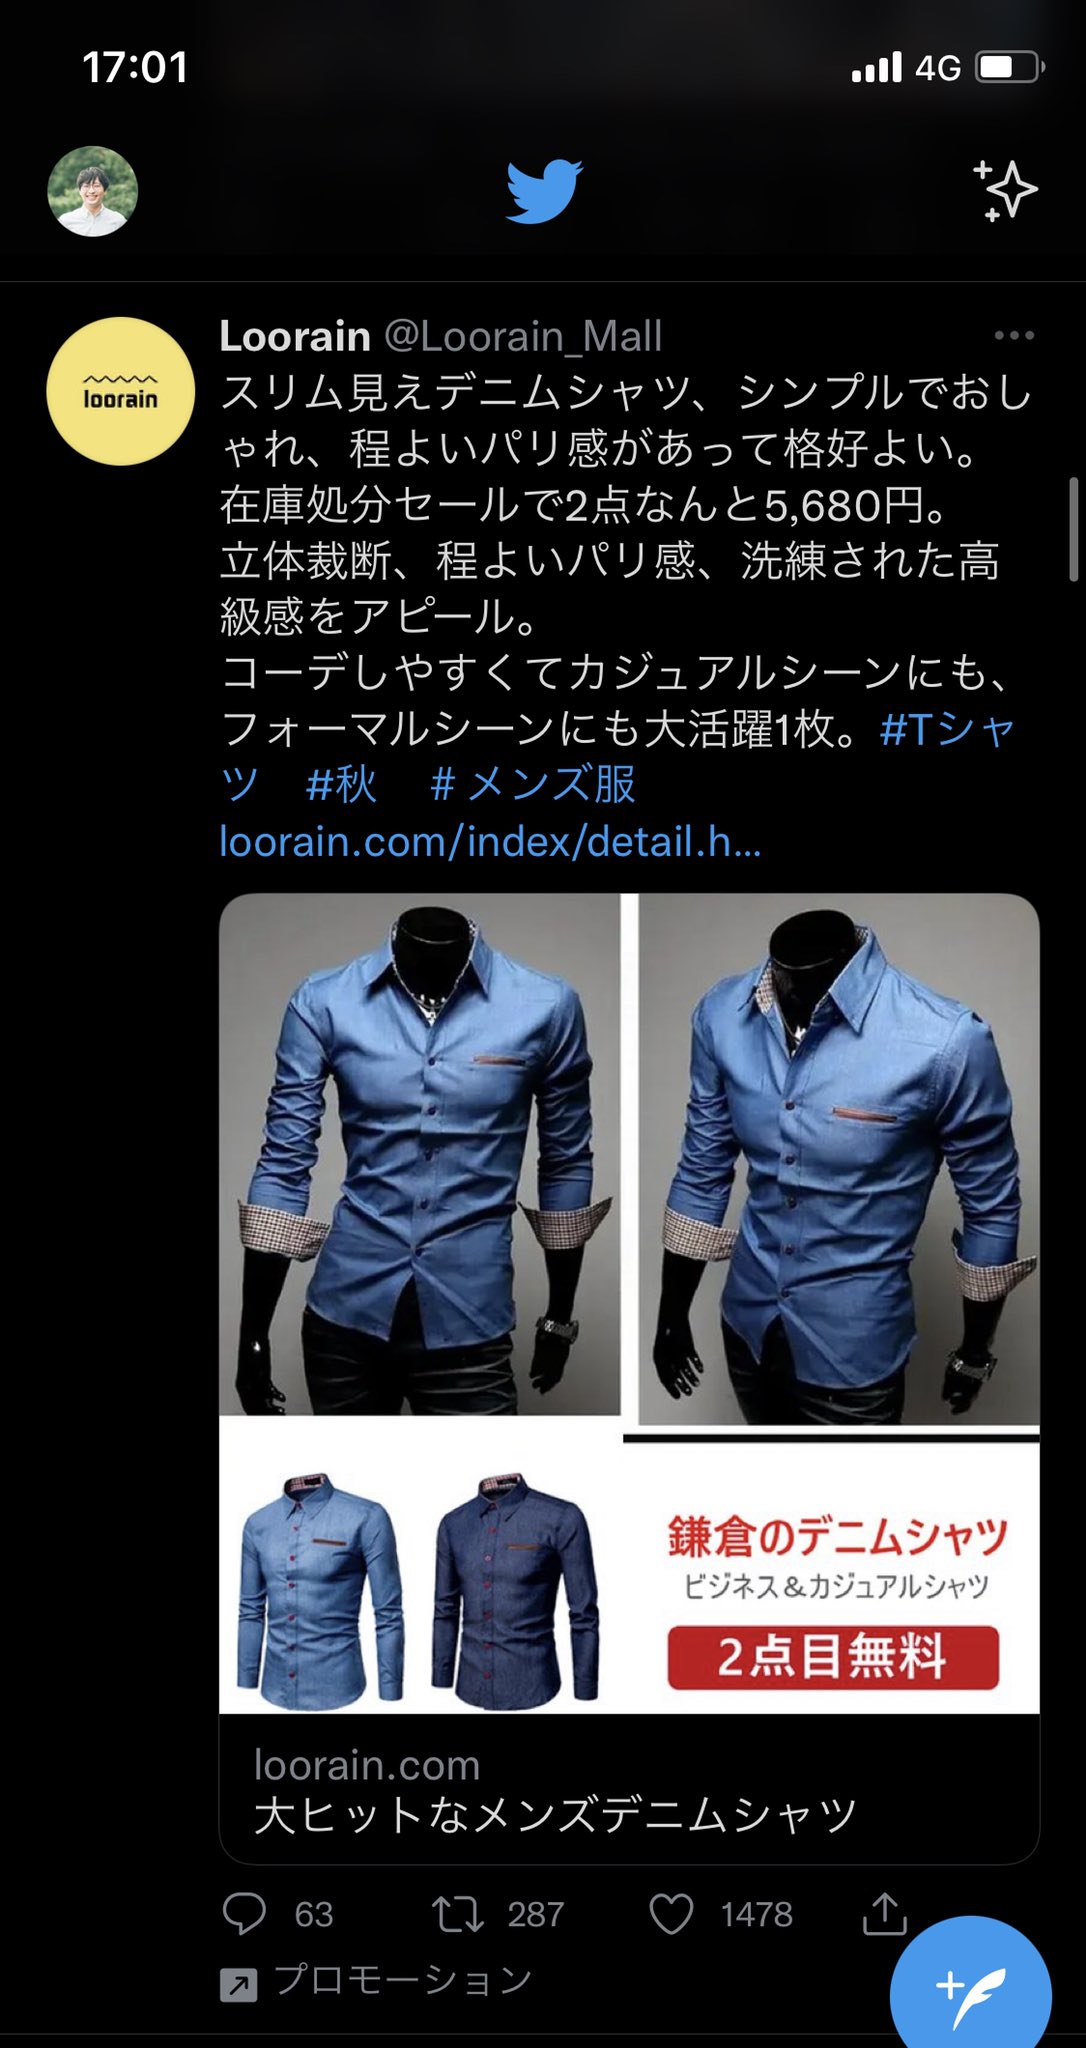 林 亮介 スーツec 責任者 Twitterの広告で回ってきたこれ本当に鎌倉シャツ ワンチャンただの 鎌倉にあるお店 の シャツかと思ったけど ガッツリメーカーズシャツ鎌倉の画像使っていますね T Co Qpec68o6al Twitter